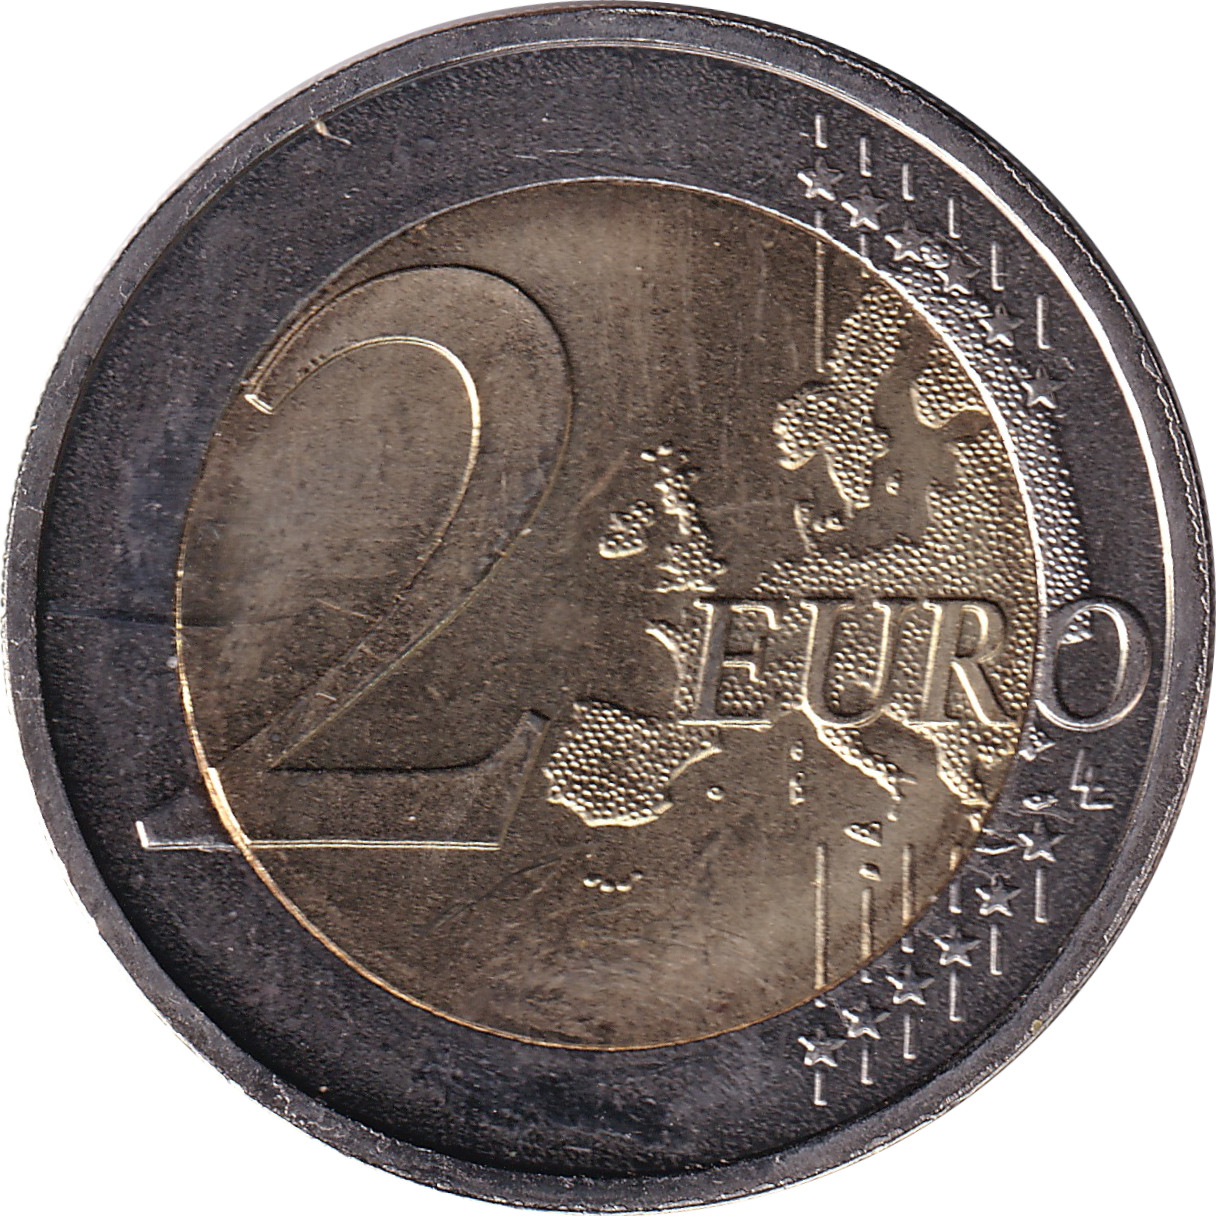 2 euro - Rheinland-Pfalz